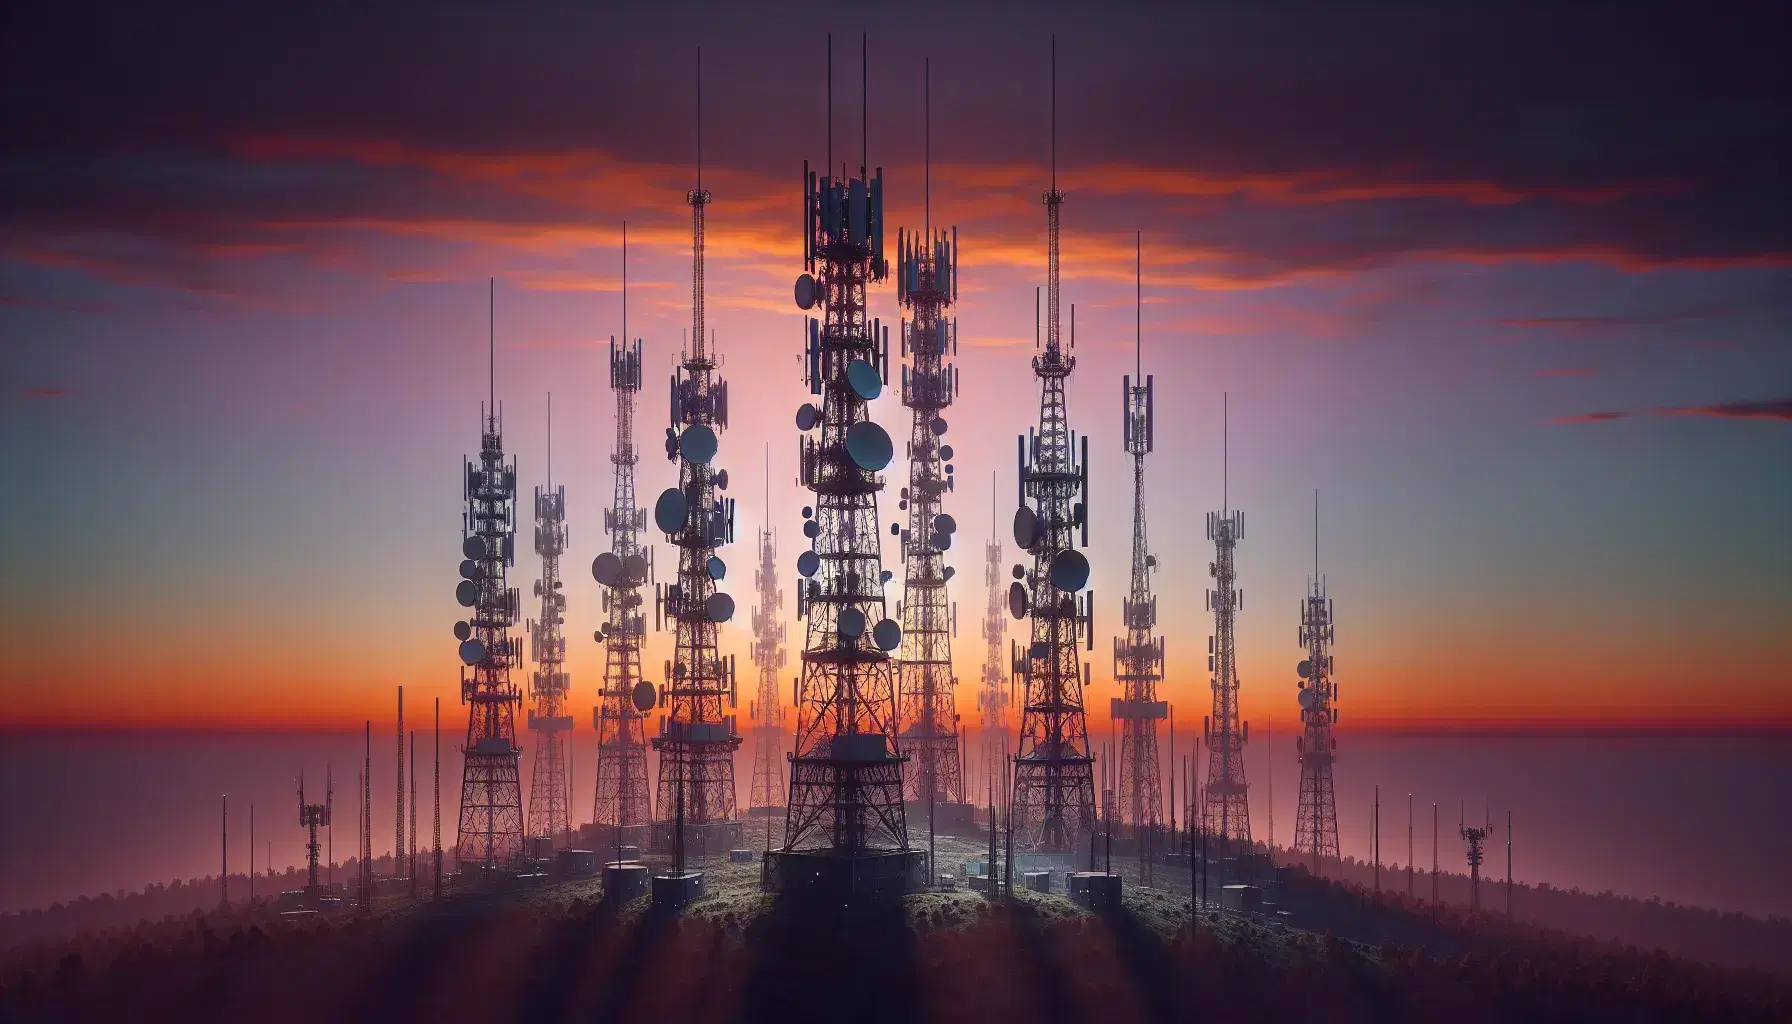 Torres de telecomunicaciones al atardecer con antenas diversas sobre un paisaje crepuscular de cielo naranja a violeta y vegetación oscura.